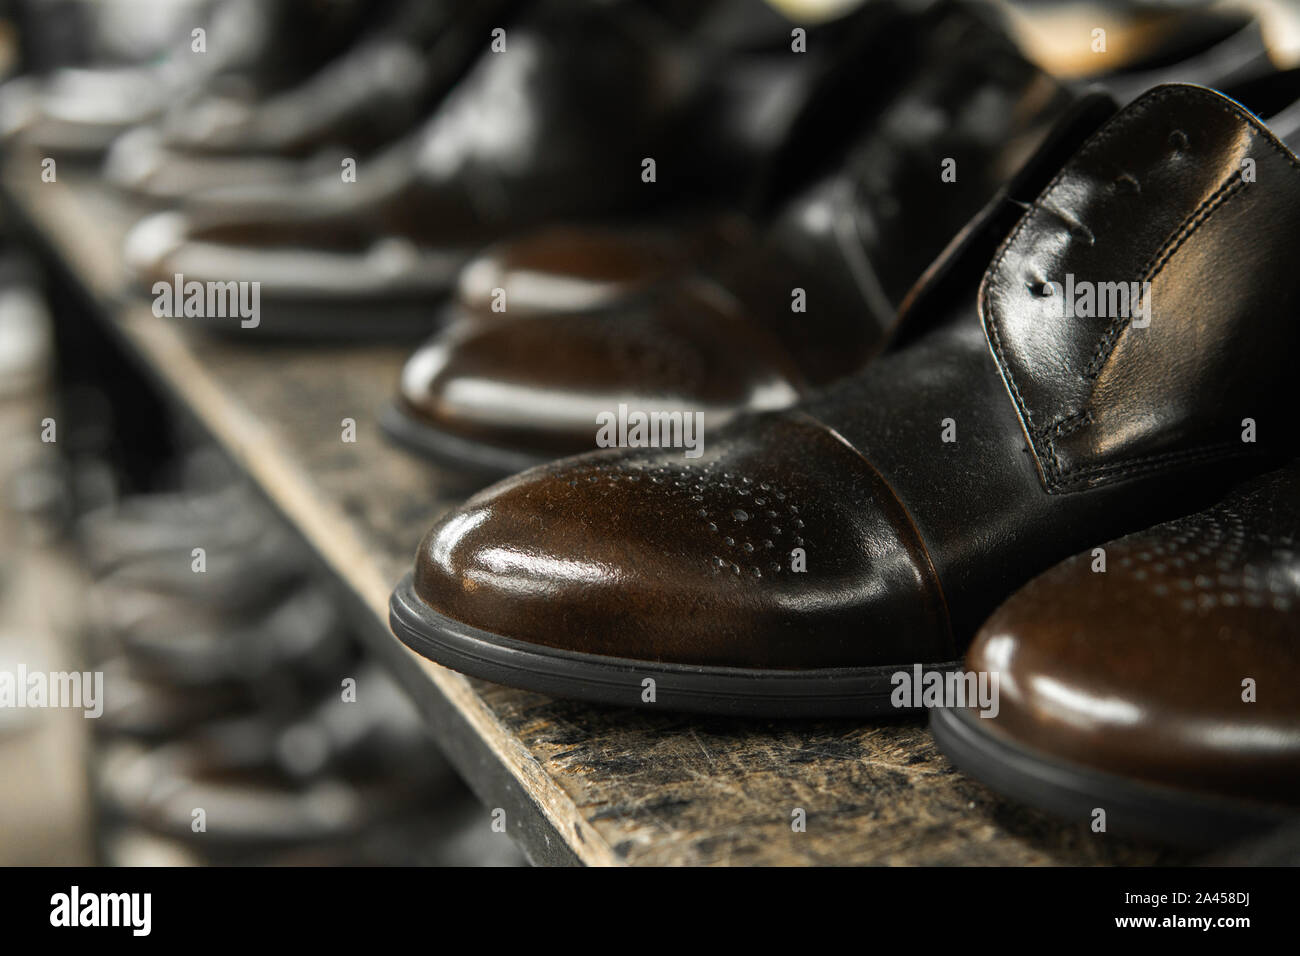 Eine Menge neue Schwarze glänzende Schuhe auf einem Regal. Schuhfabrik,  Fertigwarenlager Stockfotografie - Alamy